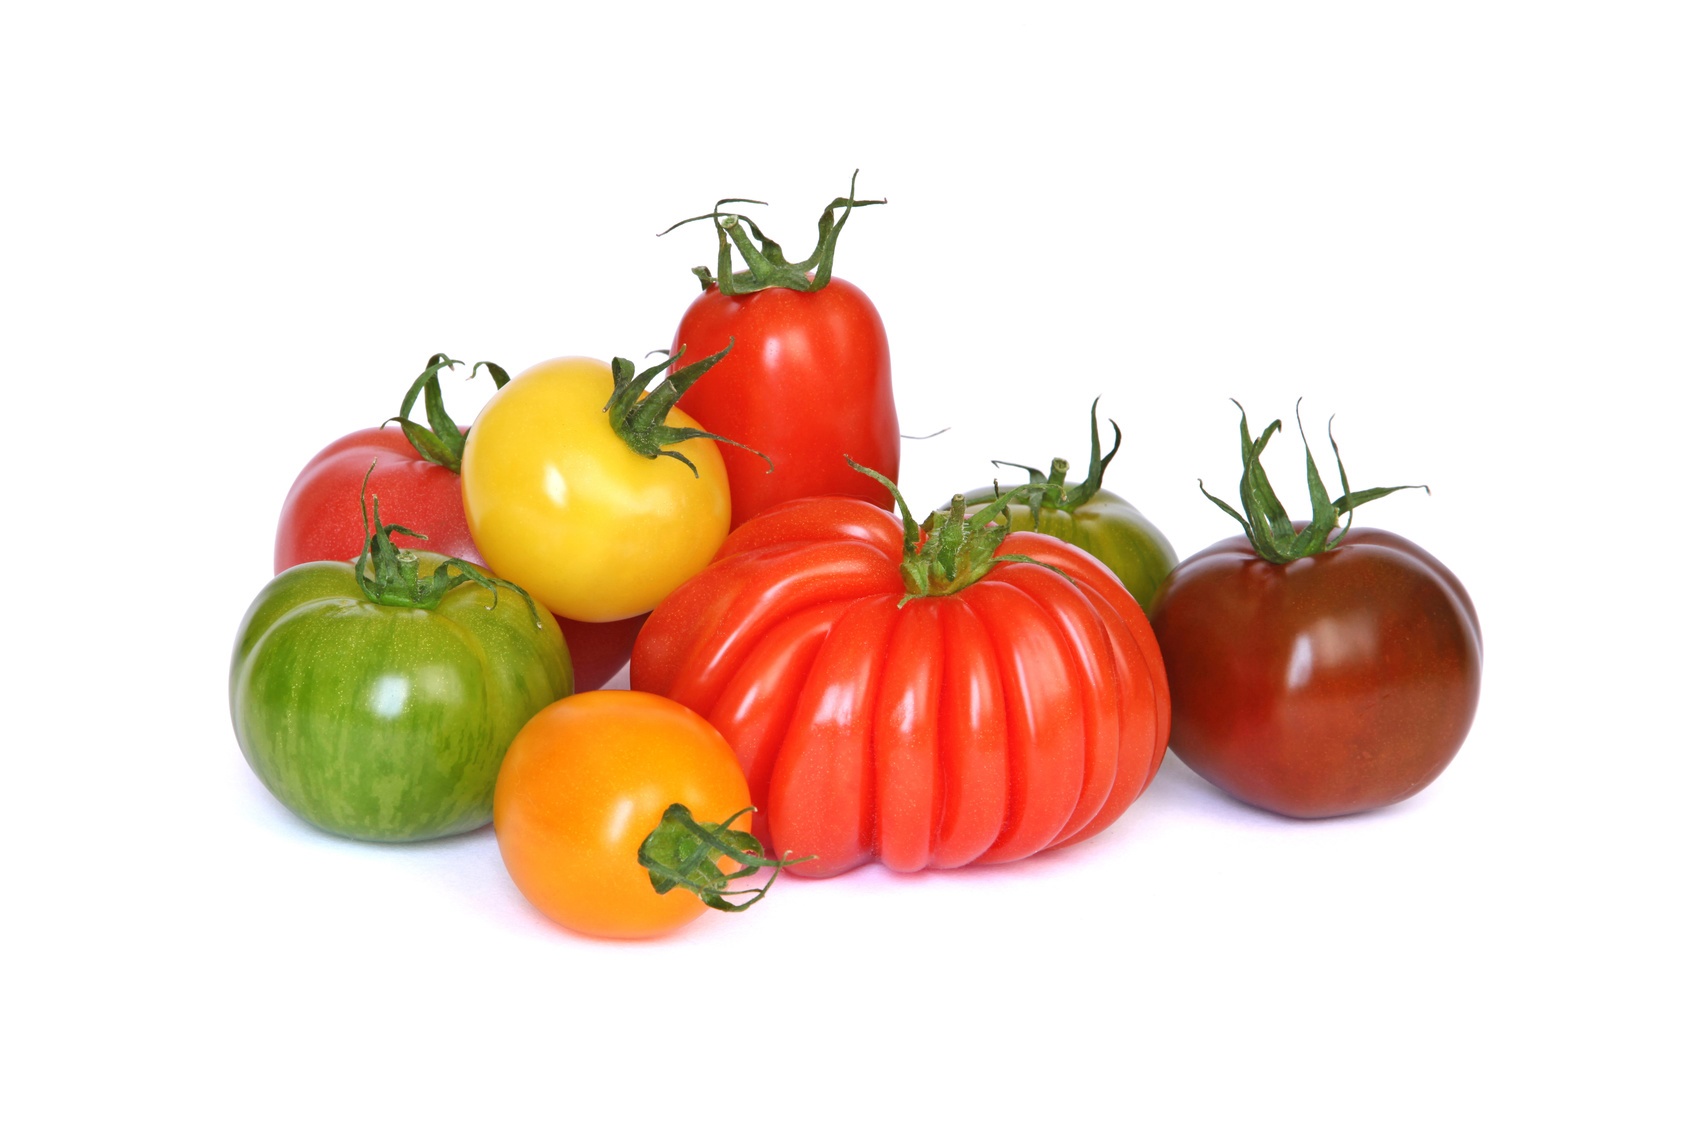 Dans la tomate, les pigments colorés sont présents dans les chromoplastes. © hcast, Fotolia